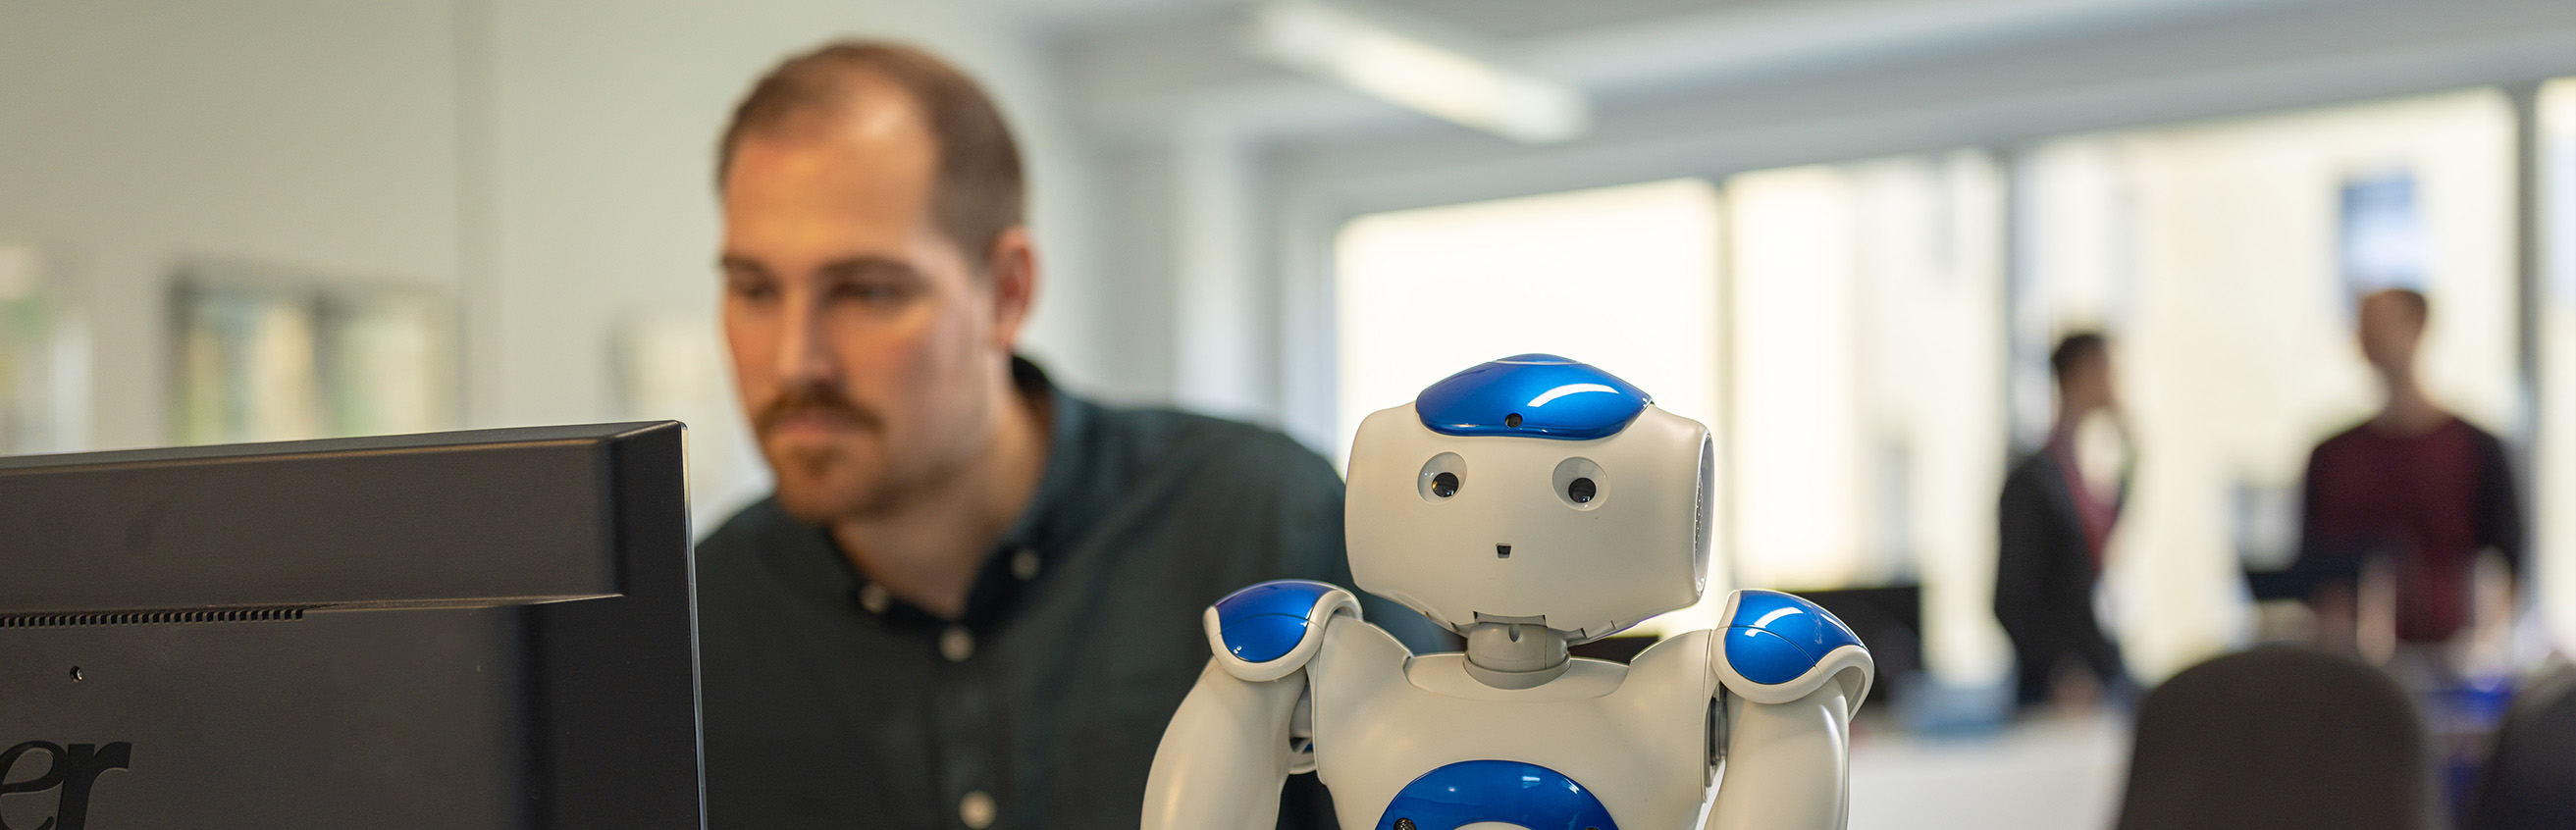 Student am PC mit humanoidem Roboter im Master-Studiengang Informatik